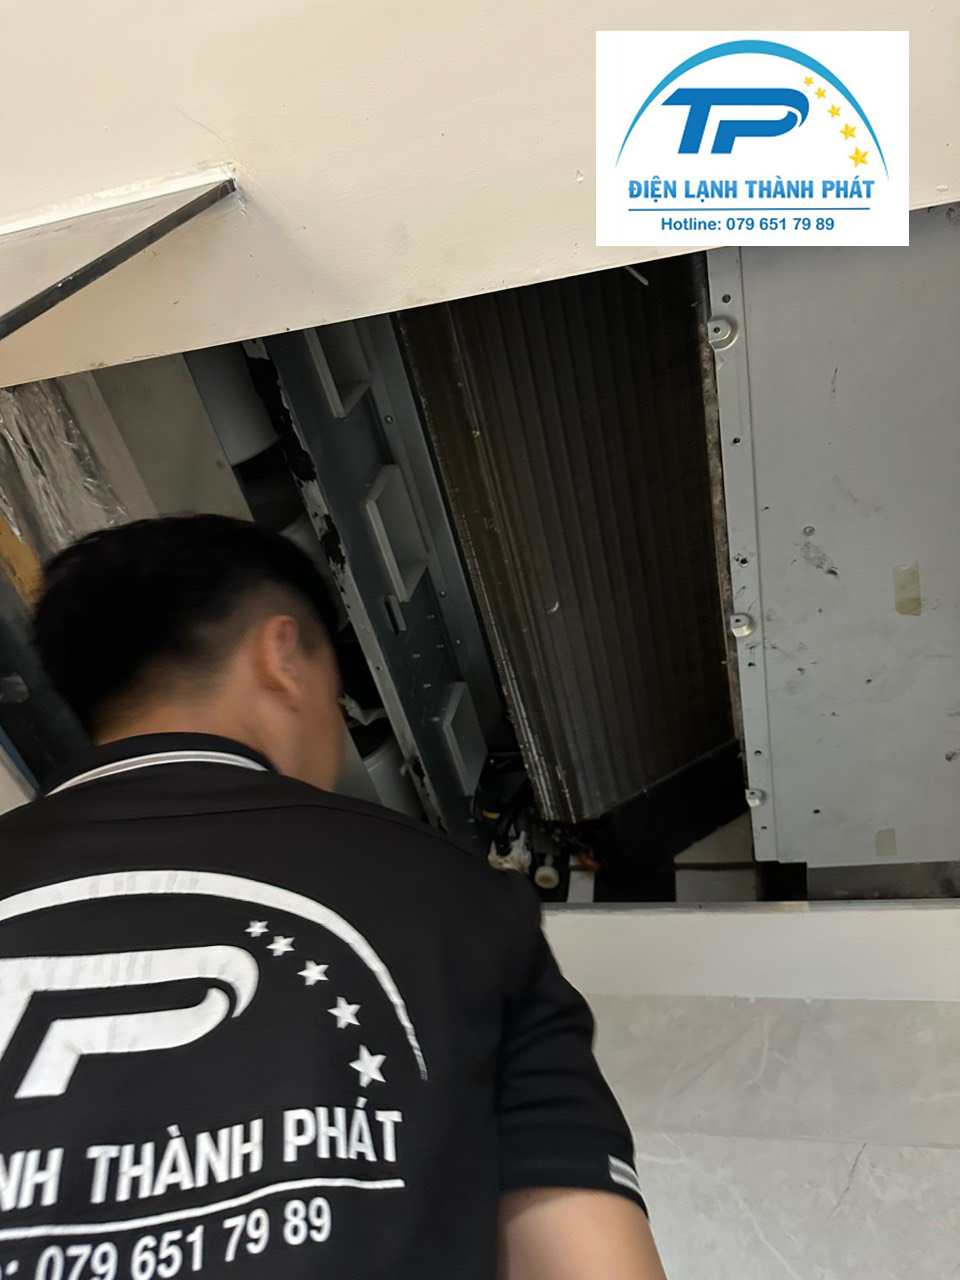 Thành Phát nhận vệ sinh máy lạnh tại nhà với chế độ bảo hành lâu dài.